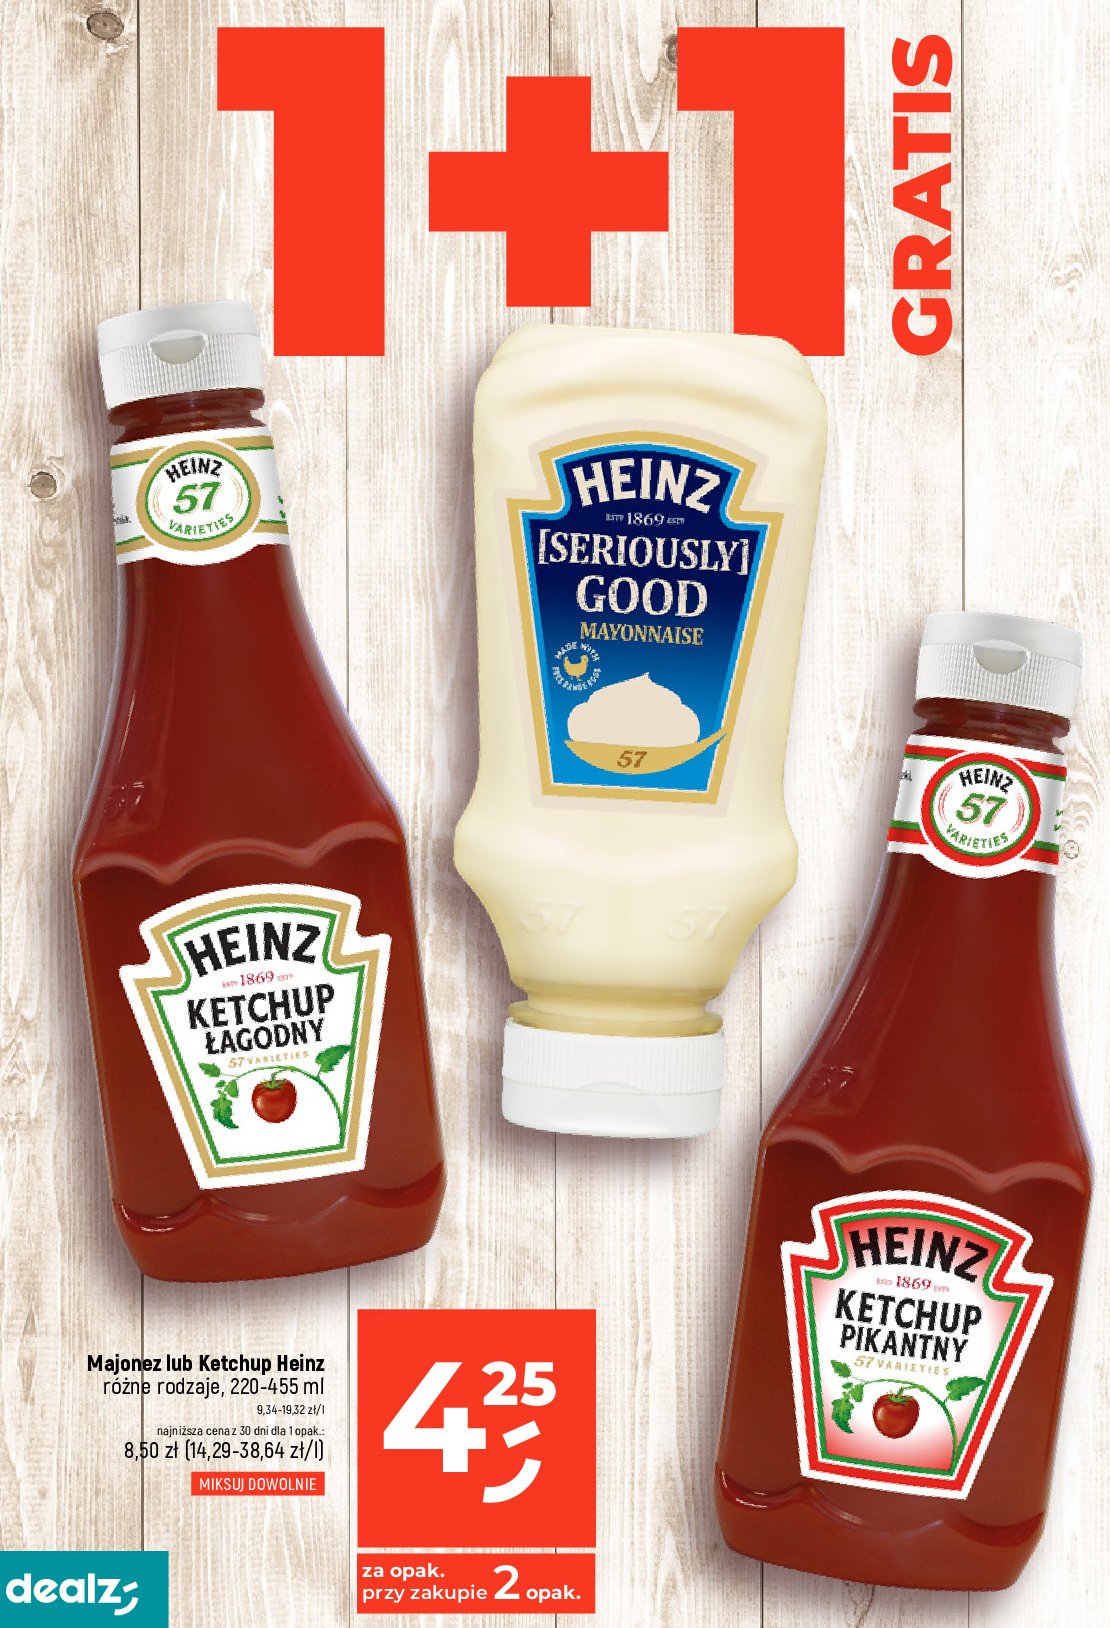 Majonez seriously good Heinz promocja